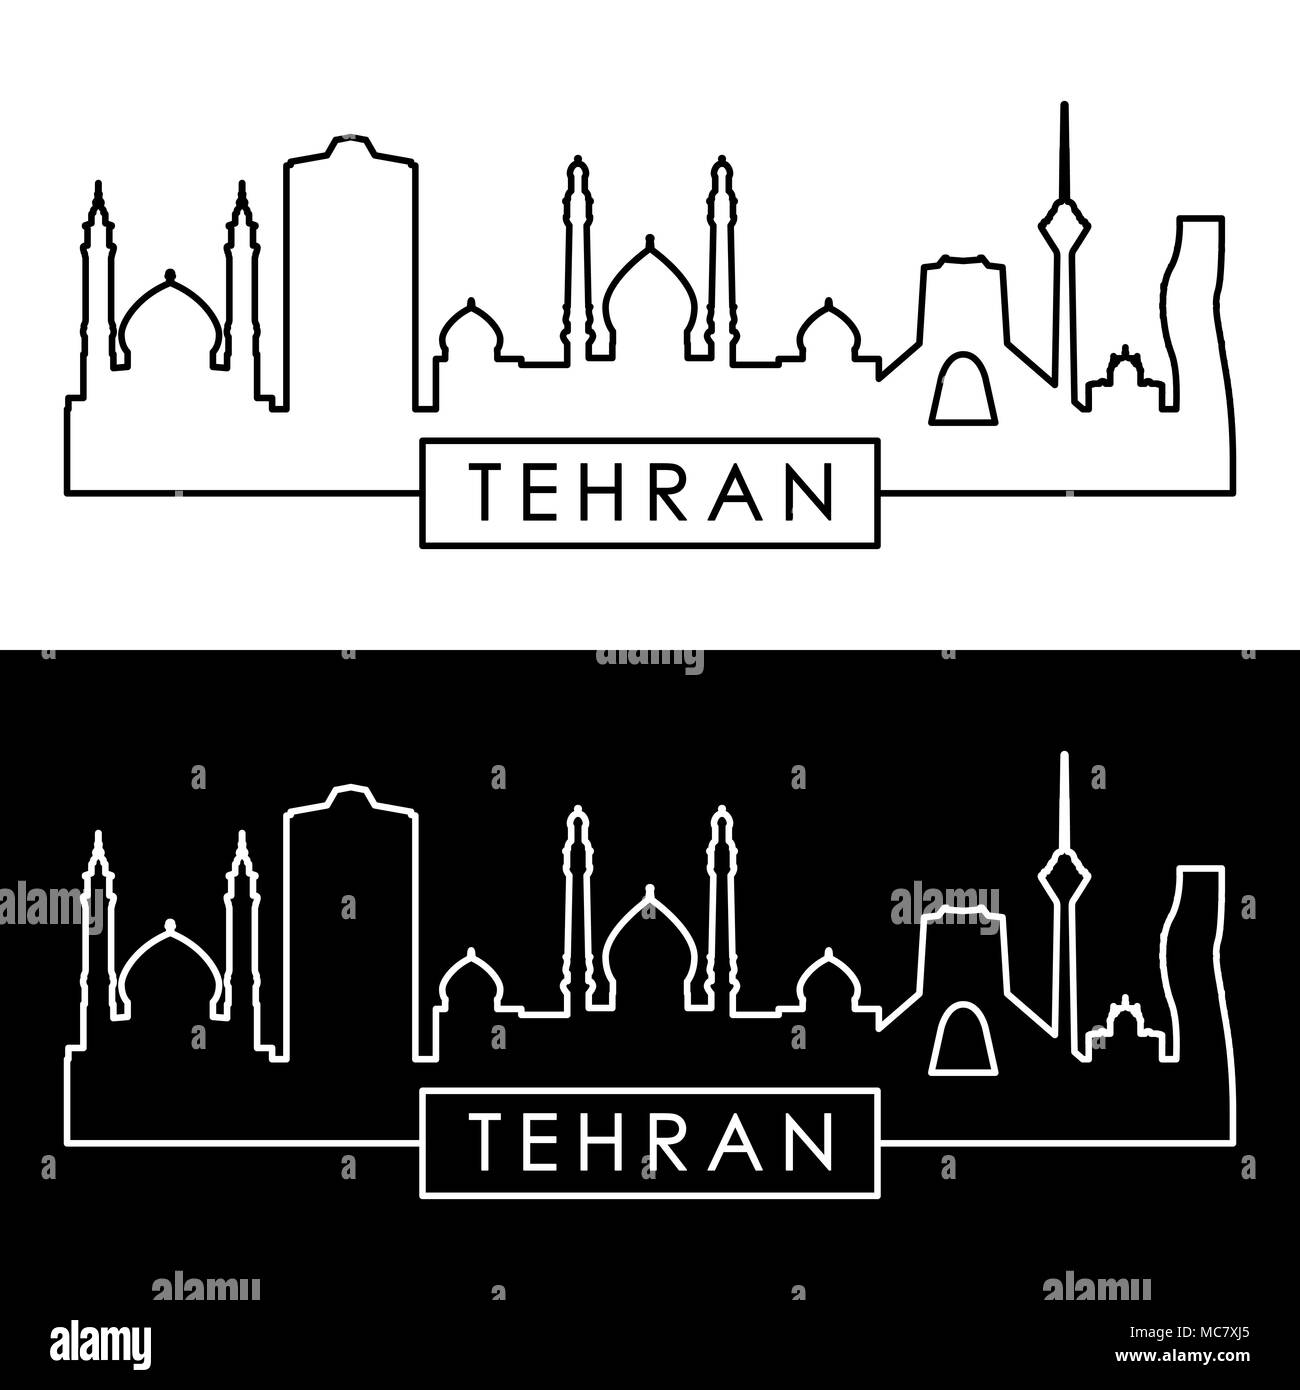 Tehran skyline. Linear style. Editable vector file. Stock Vector